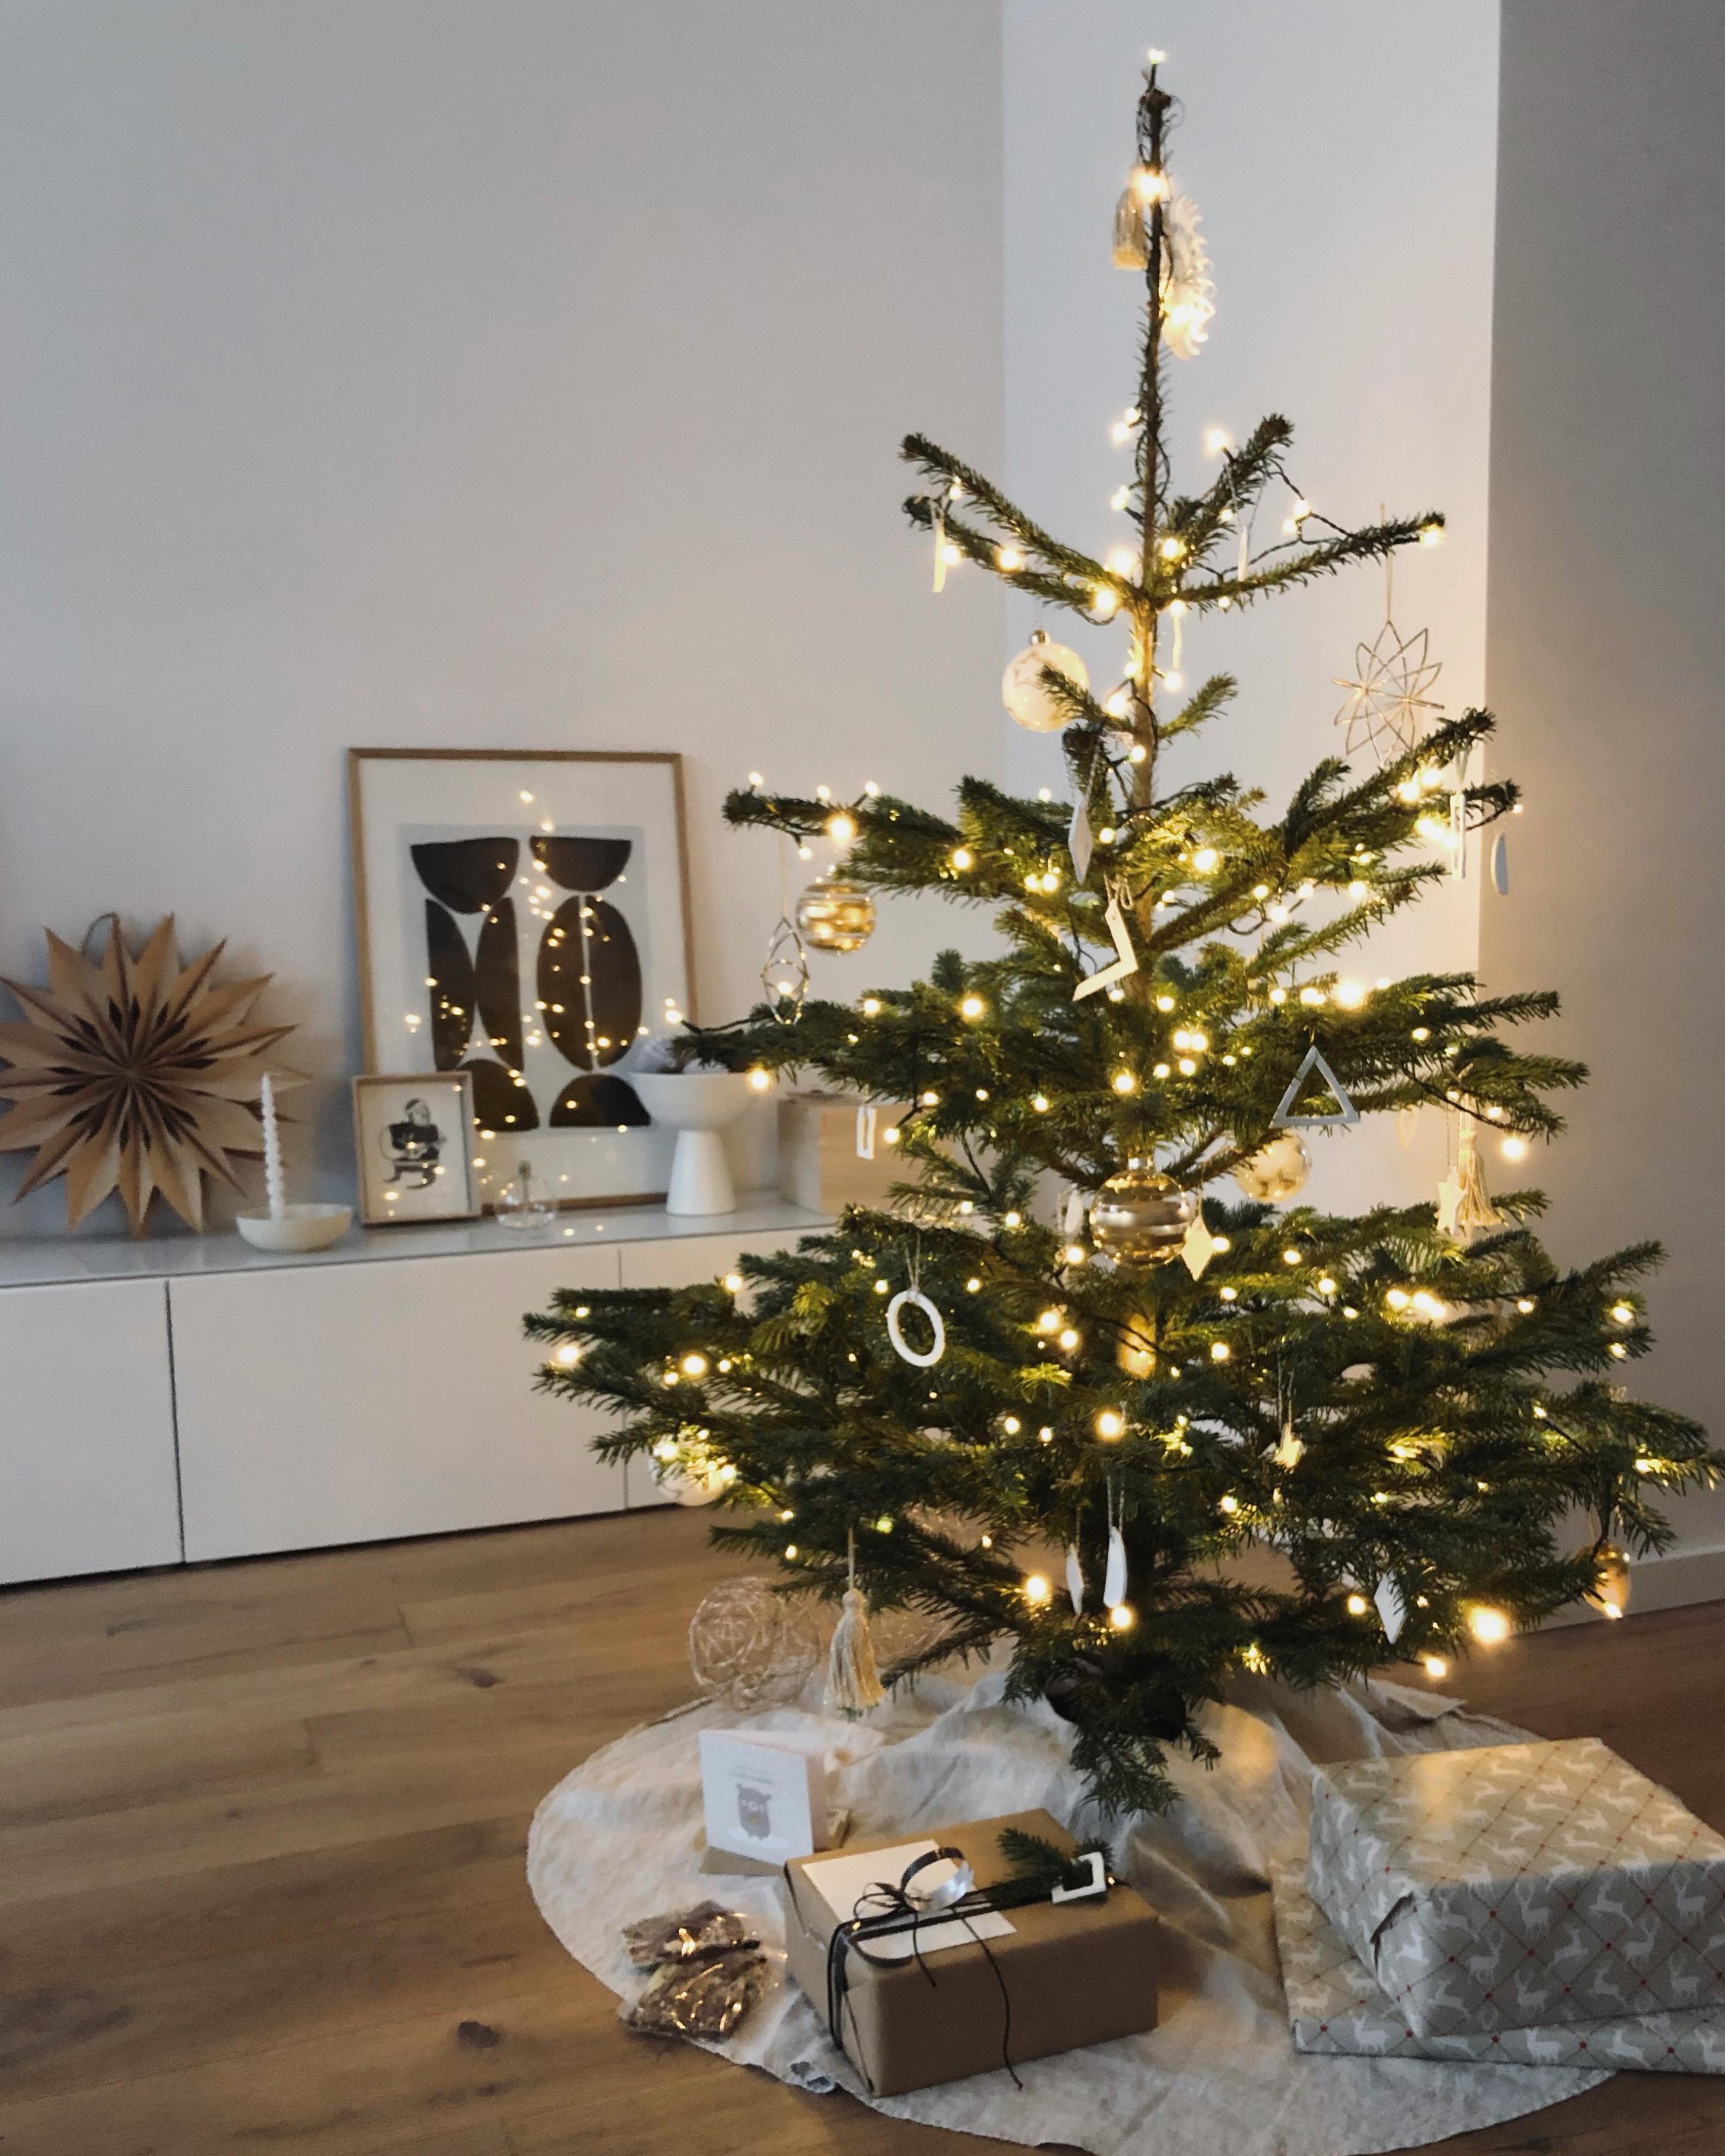 ... bevor der #Zauber vorbei ist 🎄✨
#weihnachten #christmas #weihnachtsbaum #christmastree #decor #dekoidee #home